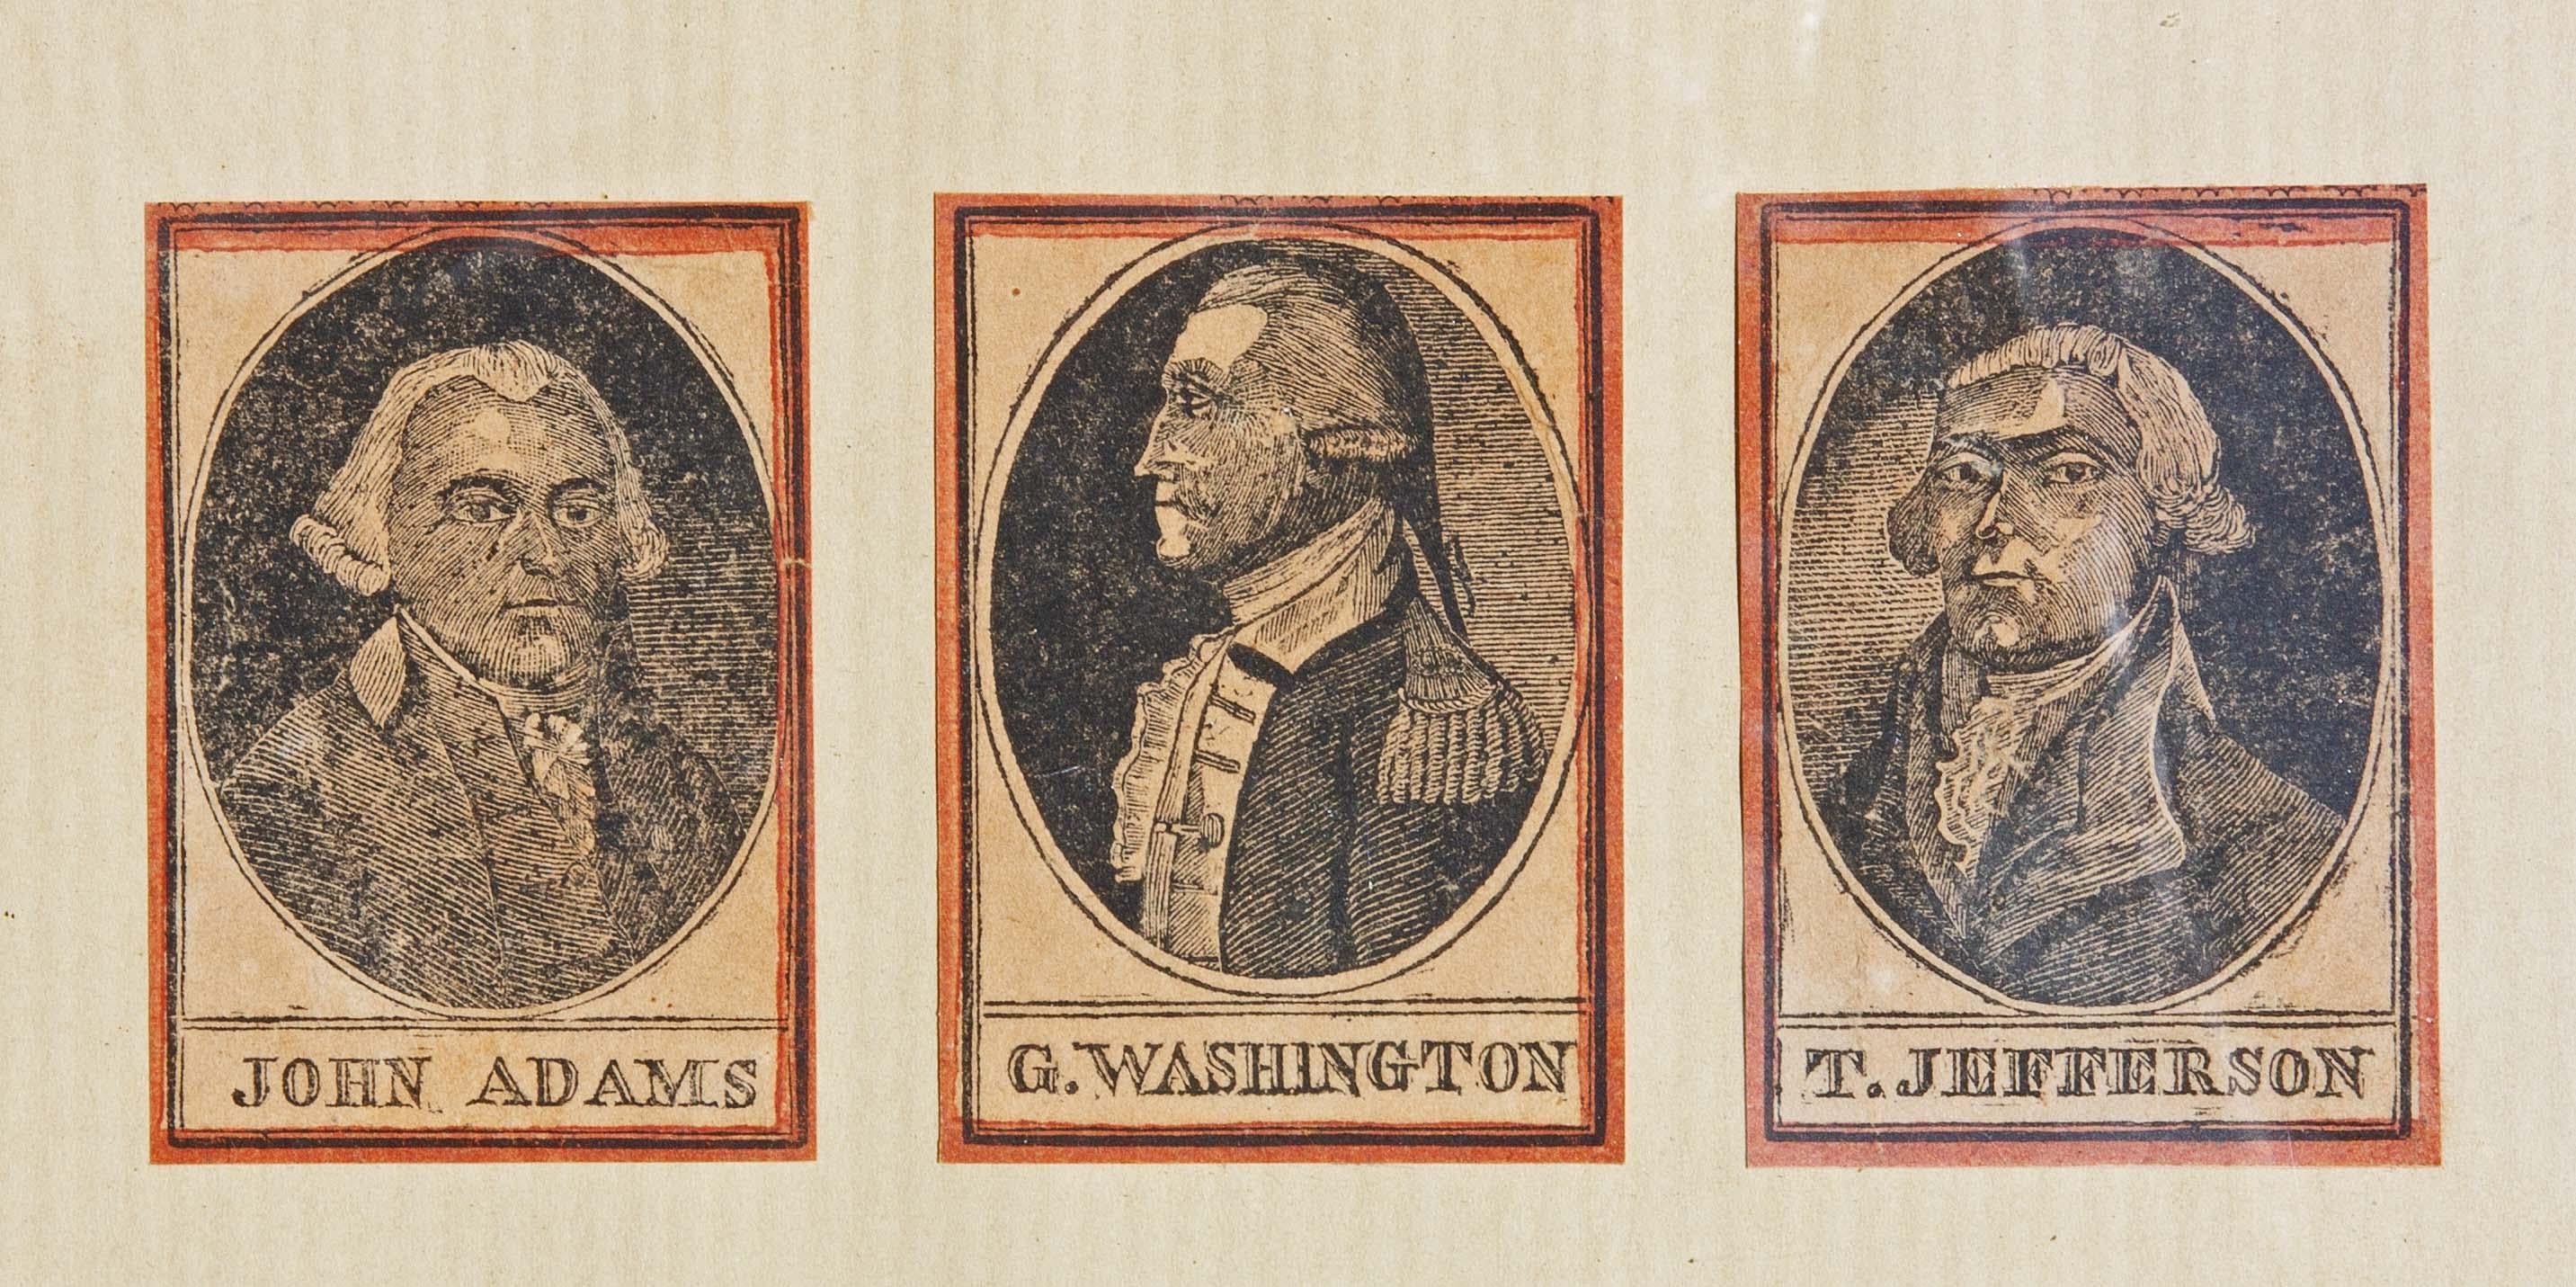 Porträtstiche des 18. Jahrhunderts von George Washington Thomas Jefferson 